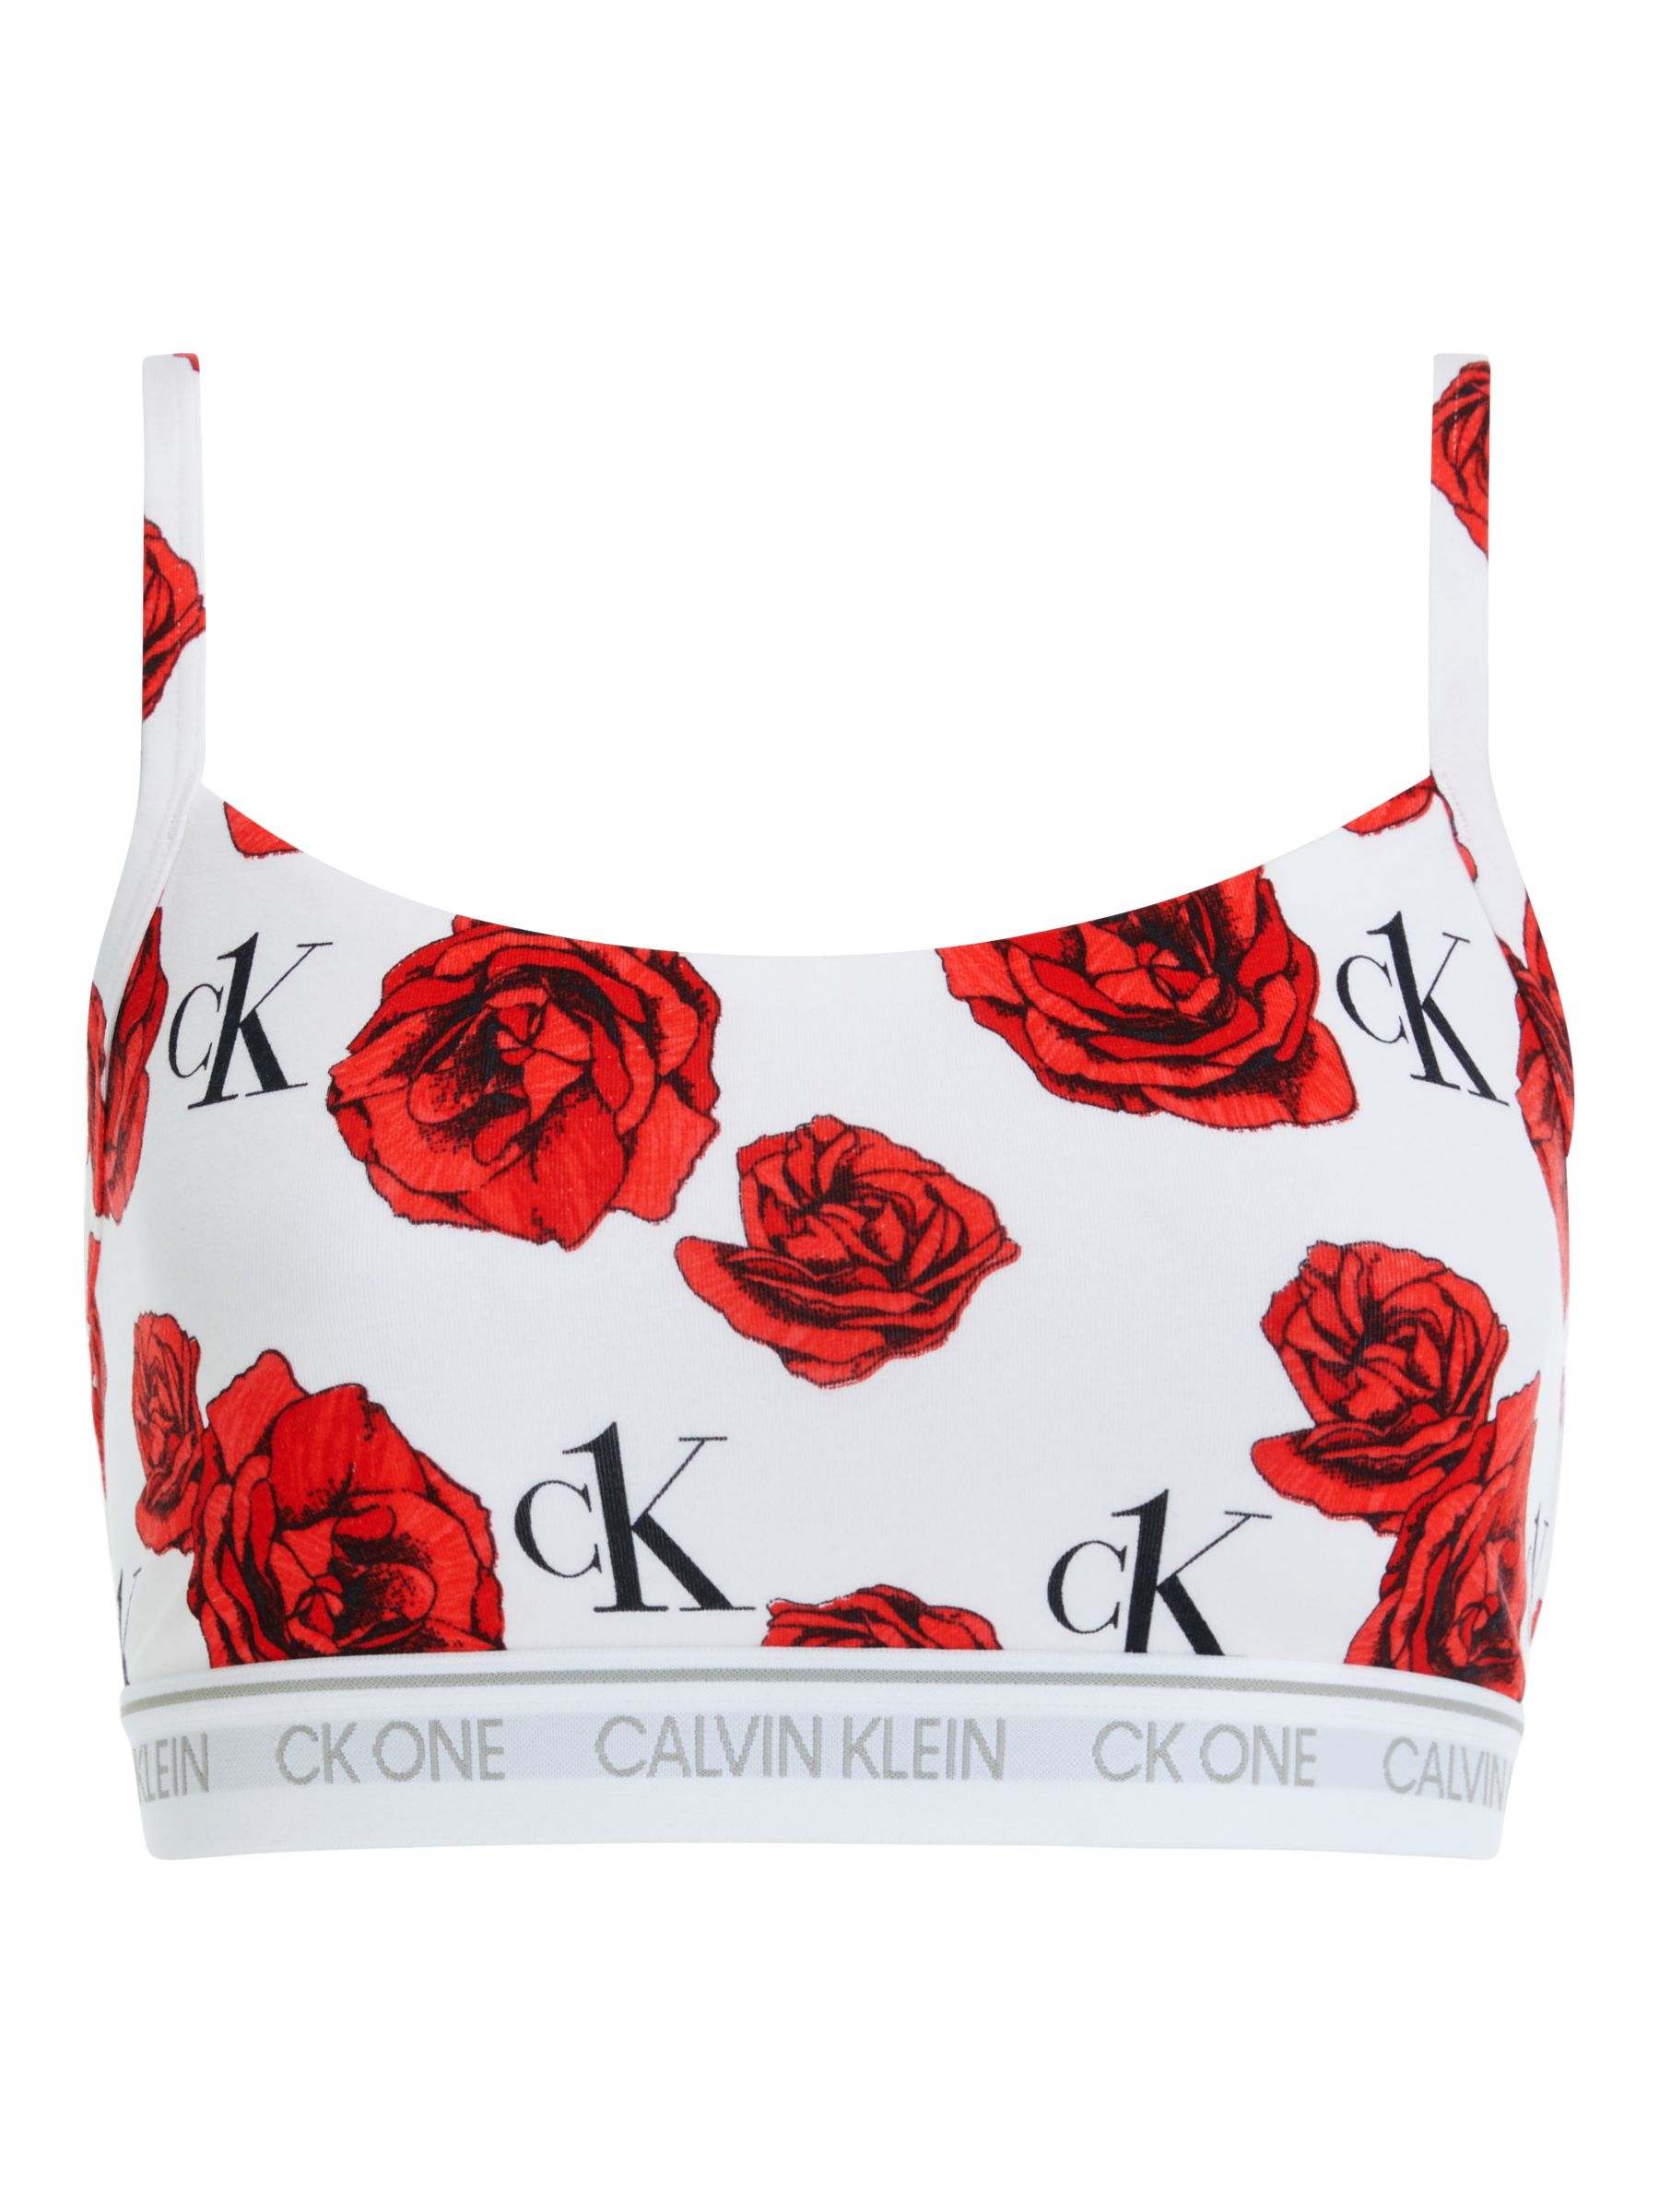 Calvin Klein CK One rose print briefs